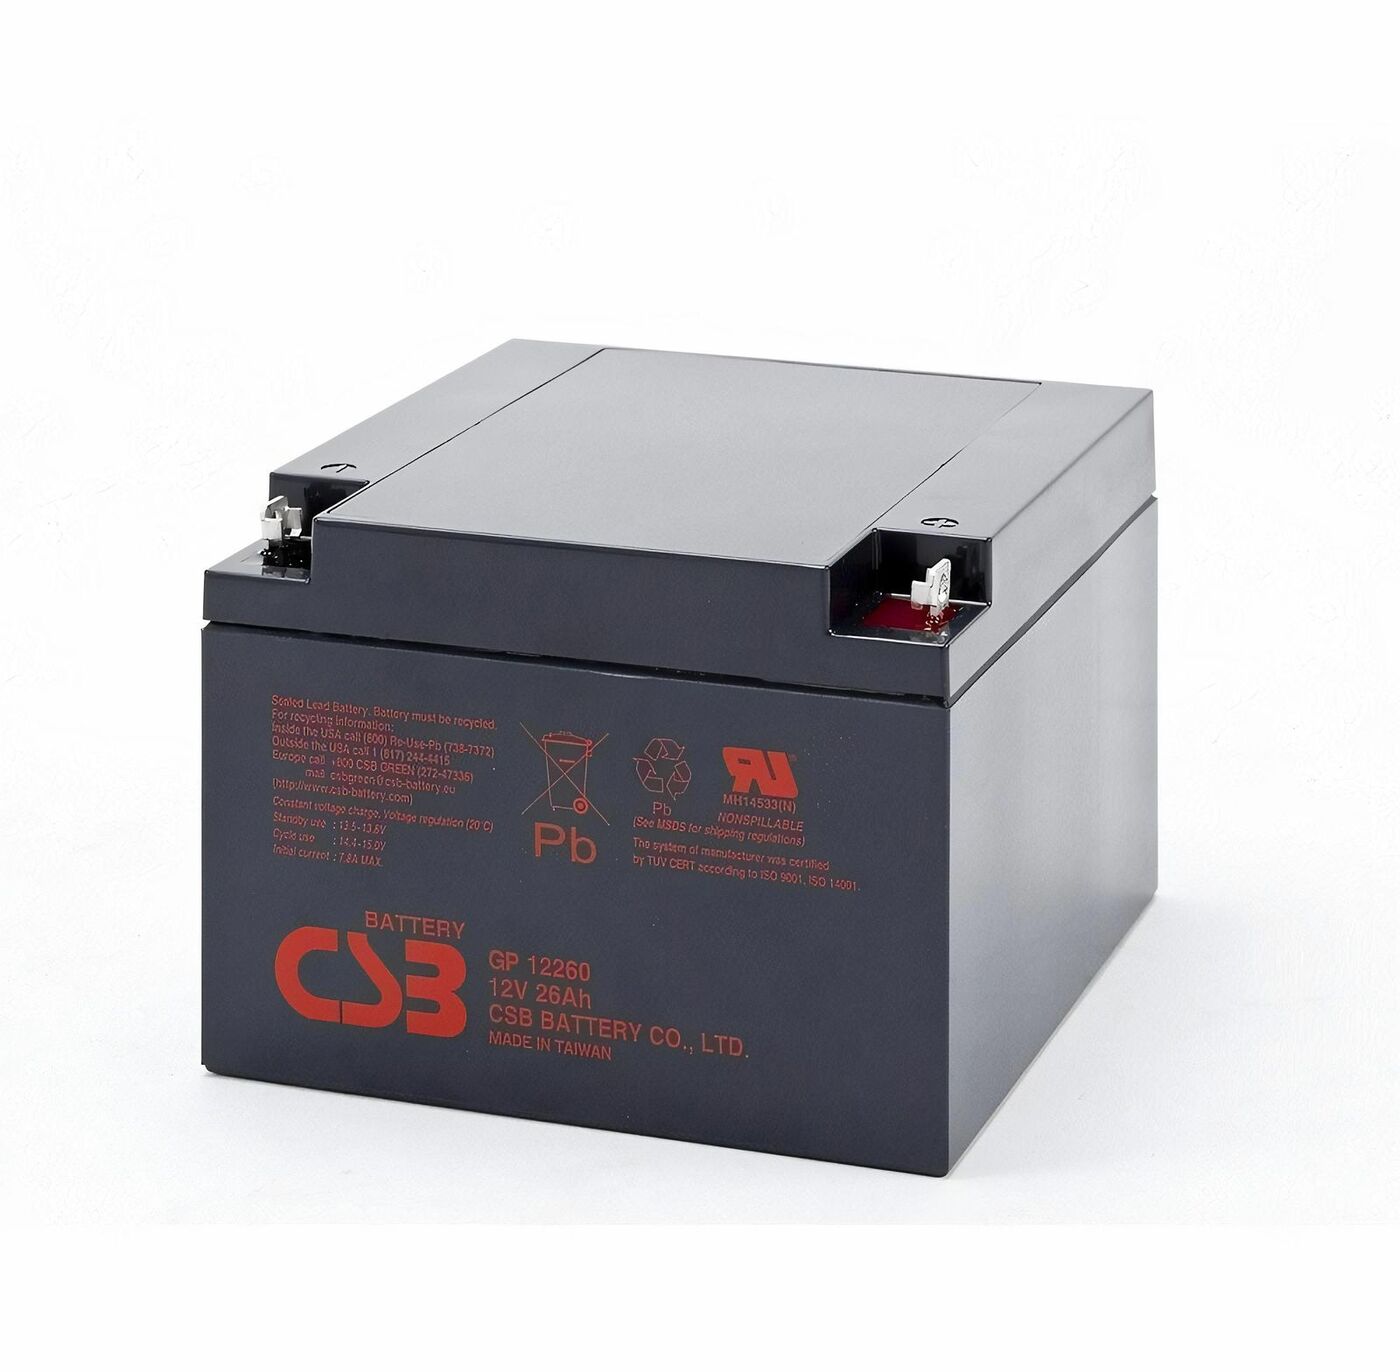 Свинцово-кислотный аккумулятор CSB GP 12260 12V 26AH 239 аккумулятор свинцово кислотный gopower la 645 security 6v 4 5ah